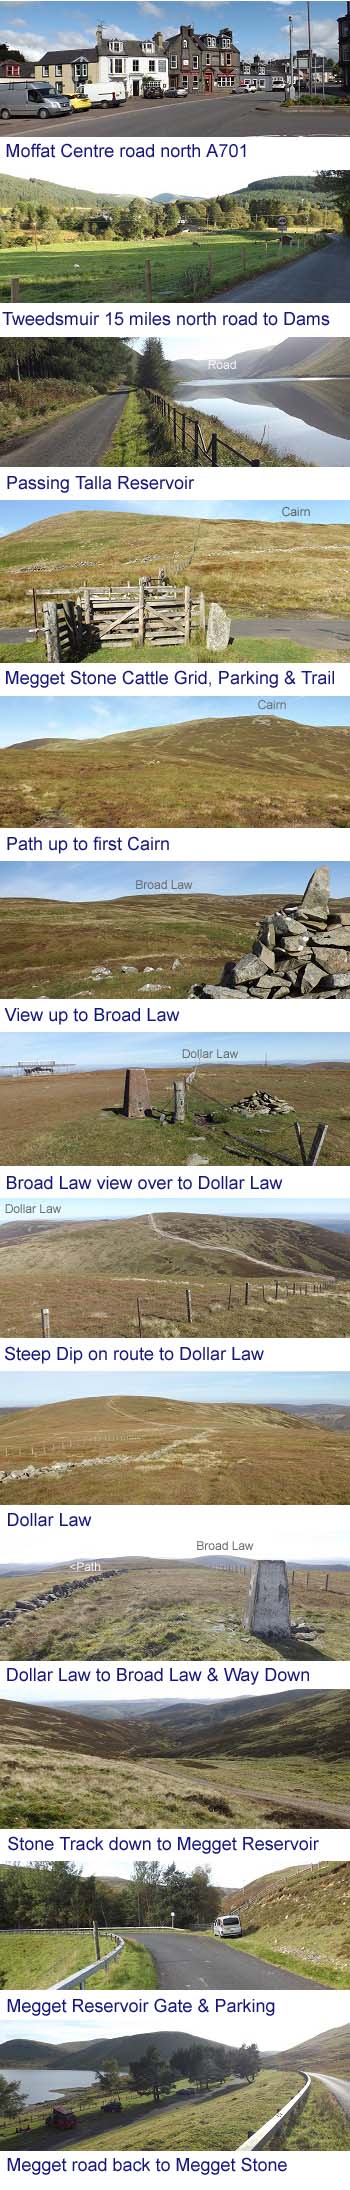 Broad Law Photos